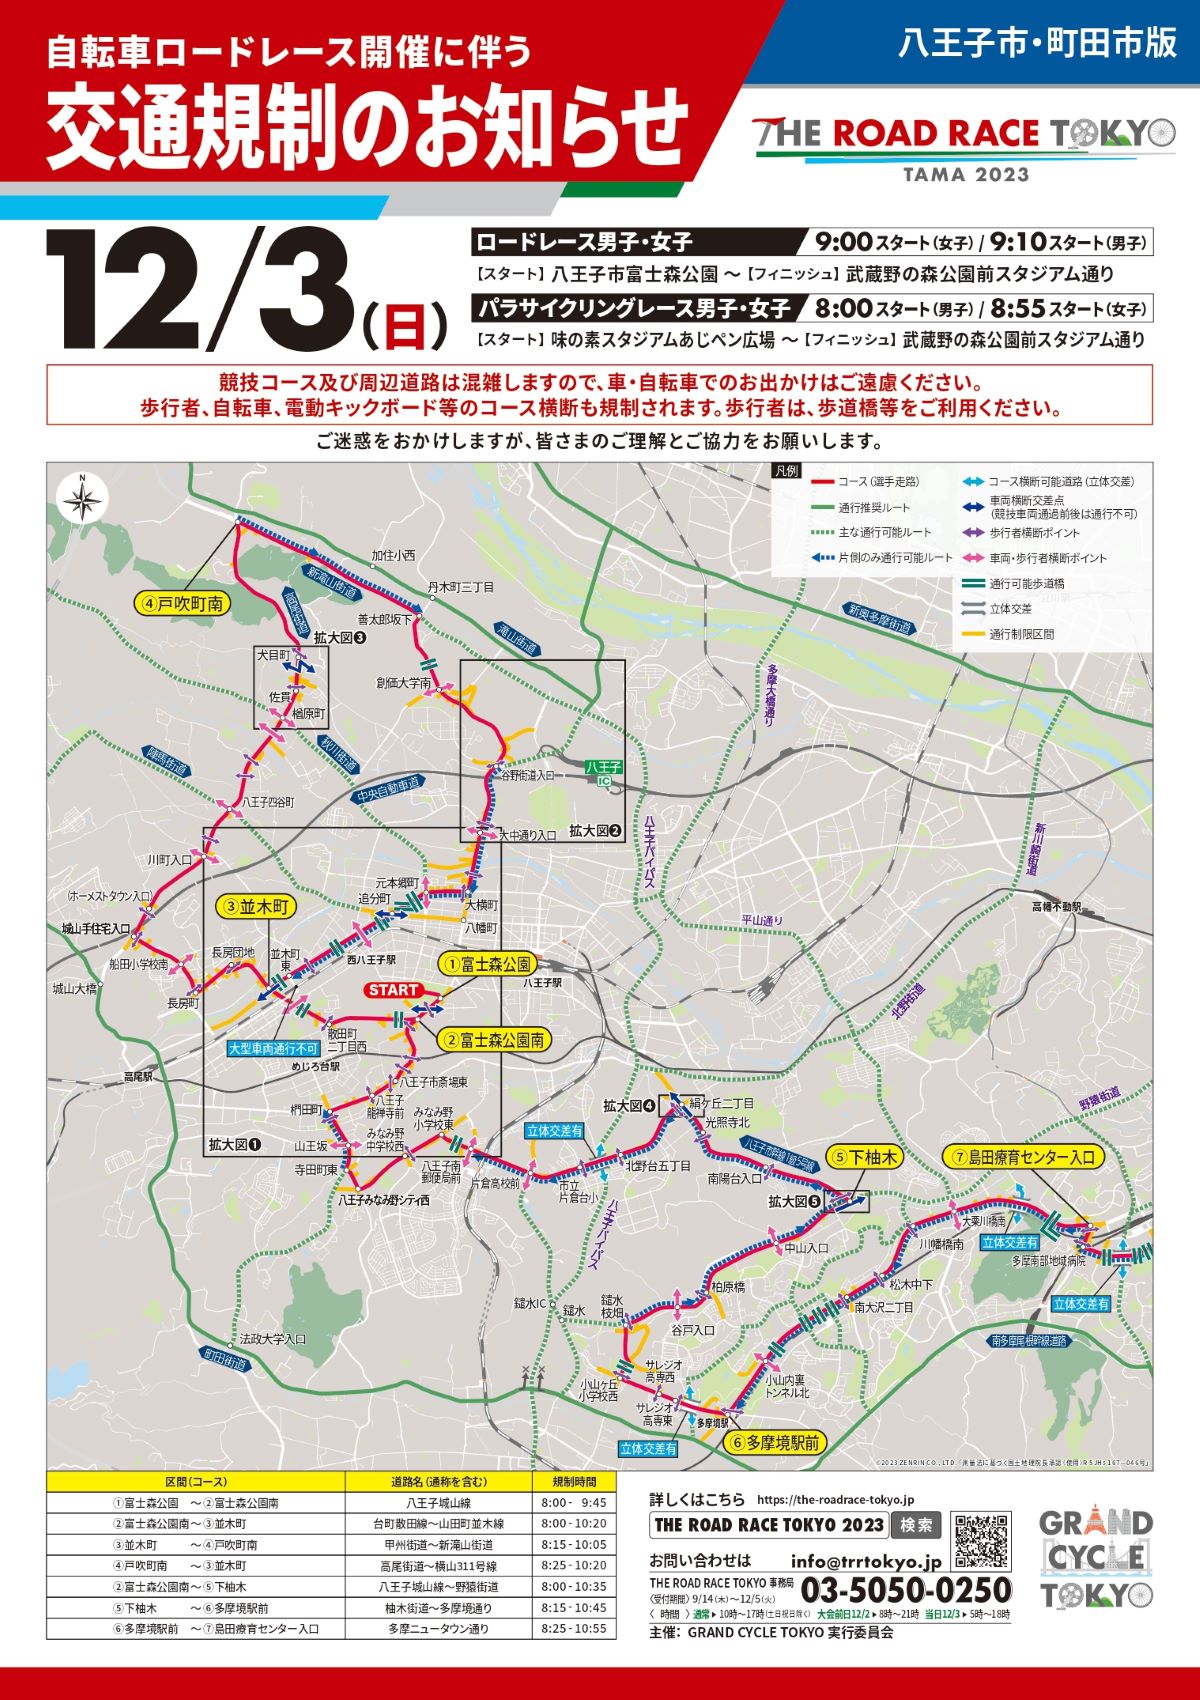 ロードレース東京・多摩 2023 交通規制図 八王子市・多摩市